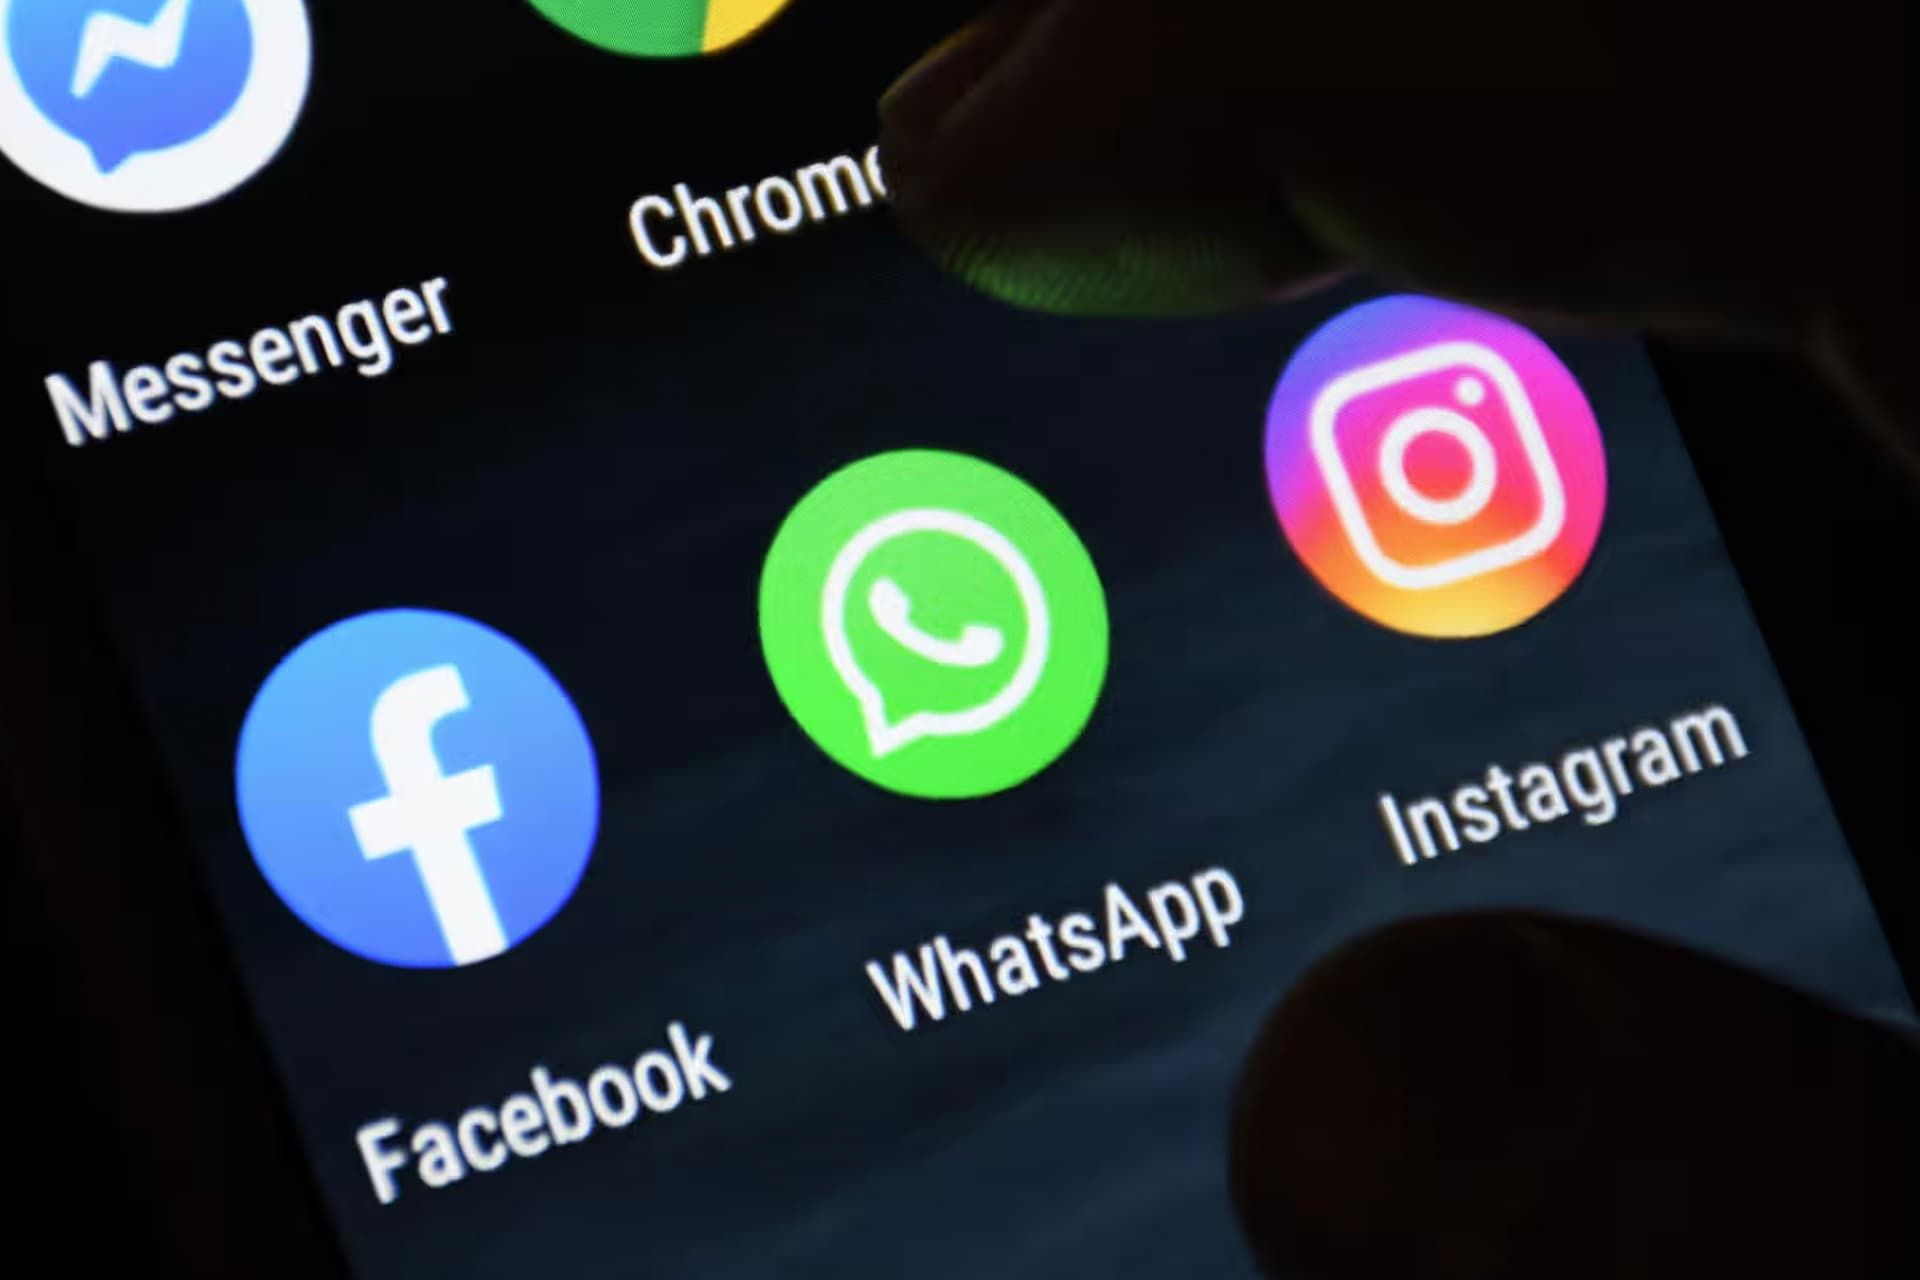 لوگو واتساپ در کنار فیسبوک و اینستاگرام / WhatsApp روی نمایشگر موبایل